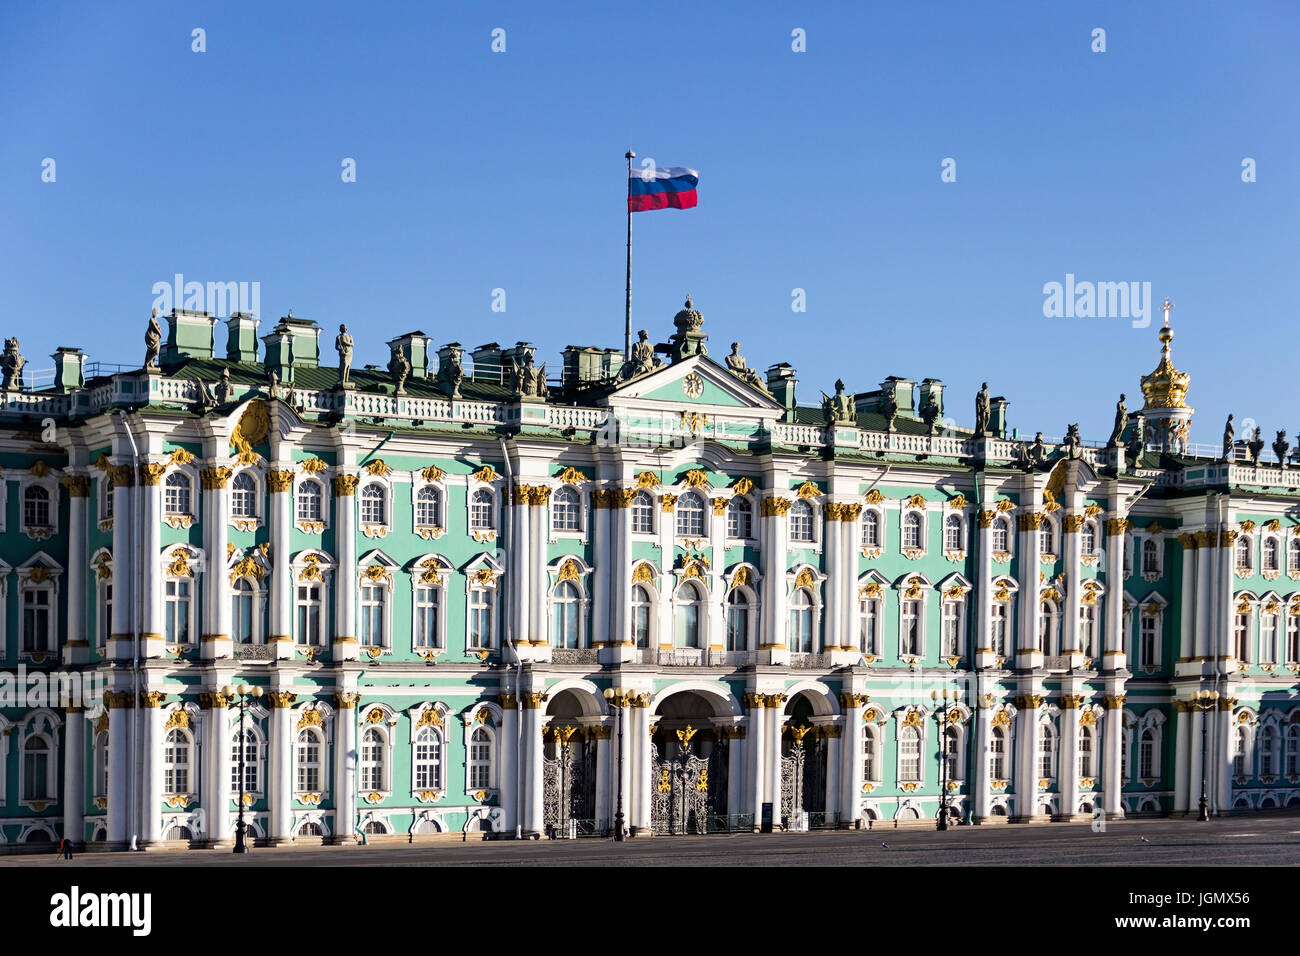 29.06.2017, Sankt Petersburg, Russland. Die Staatliche Eremitage ist eines der größten und bedeutendsten Kunst und kulturellen historischen Museen in R Stockfoto